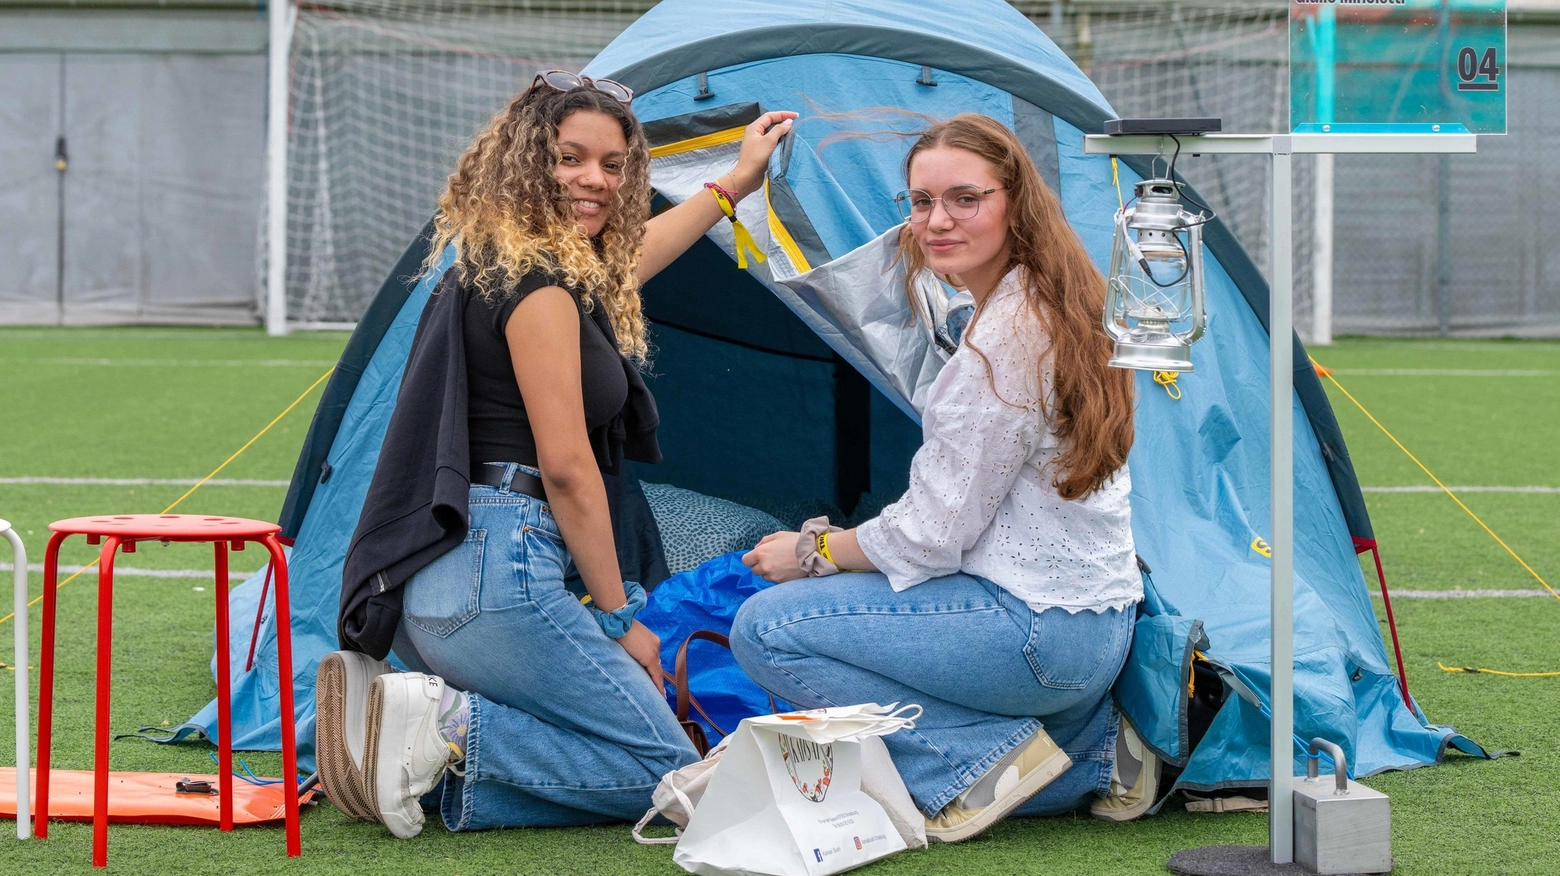 Il campeggio dei creativi. Studenti in tenda da 30 Paesi colazione con i maestri e film